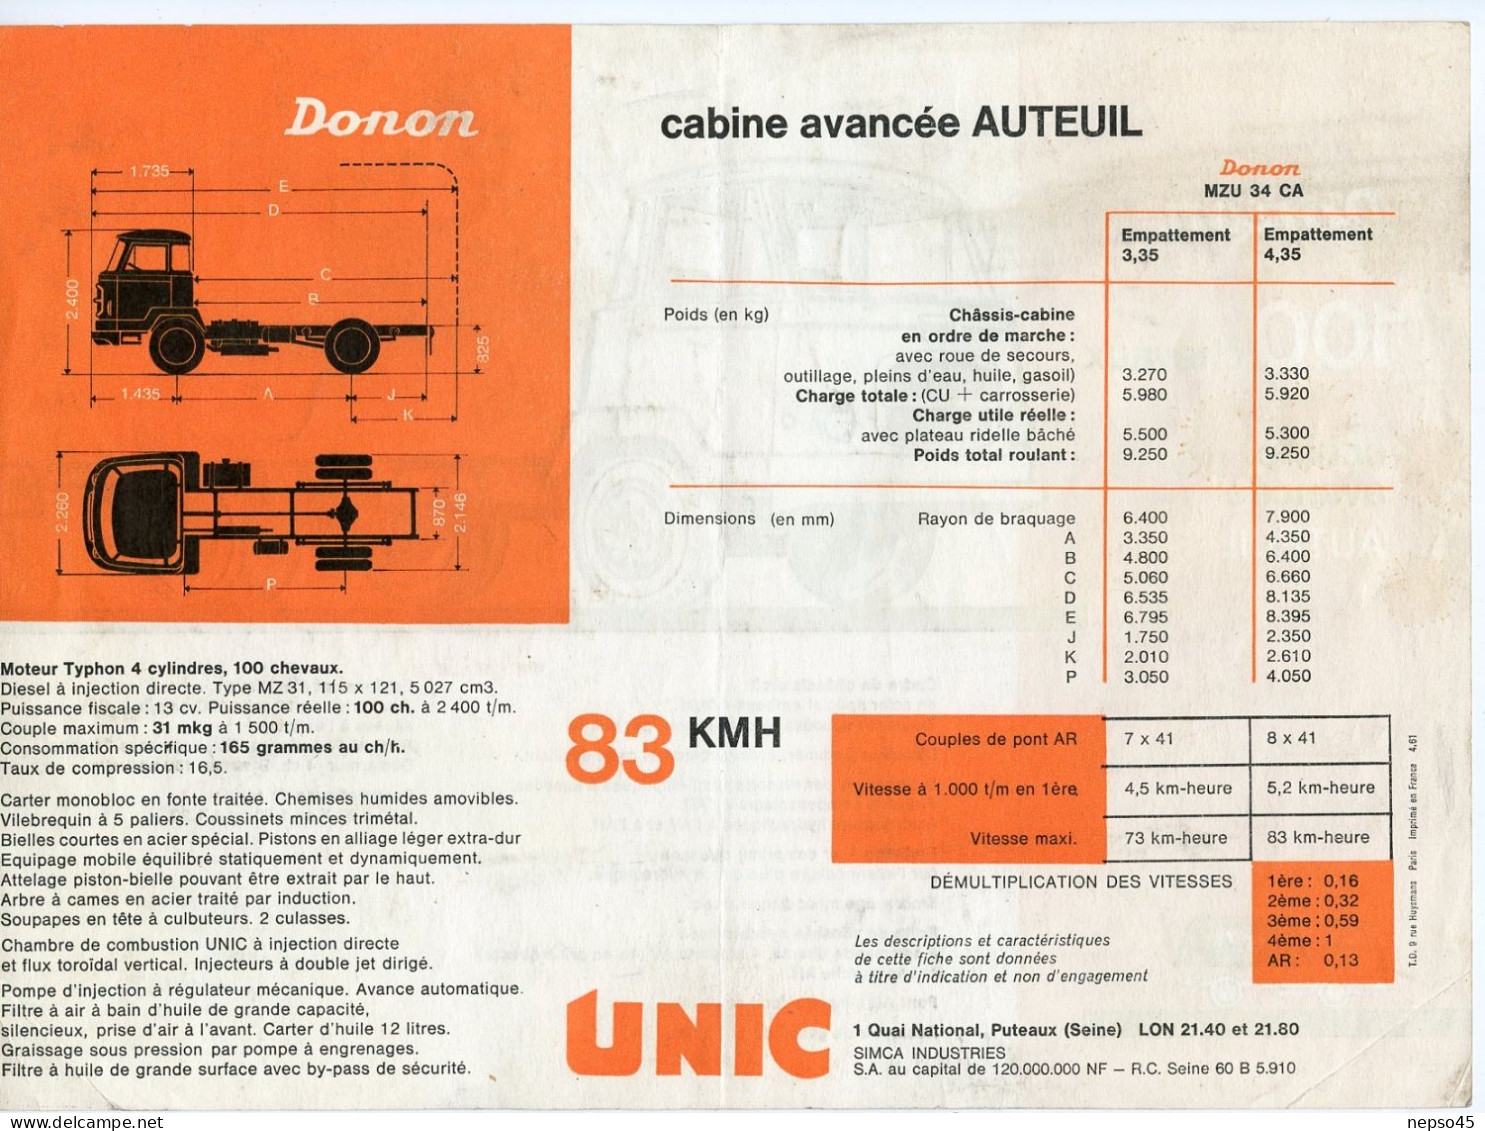 Prospectus Publicitaire.Camion Unic Donon 100 Chevaux Cabine Avancée Auteuil.Garage De Bourgogne.Dijon-Chenove. - LKW